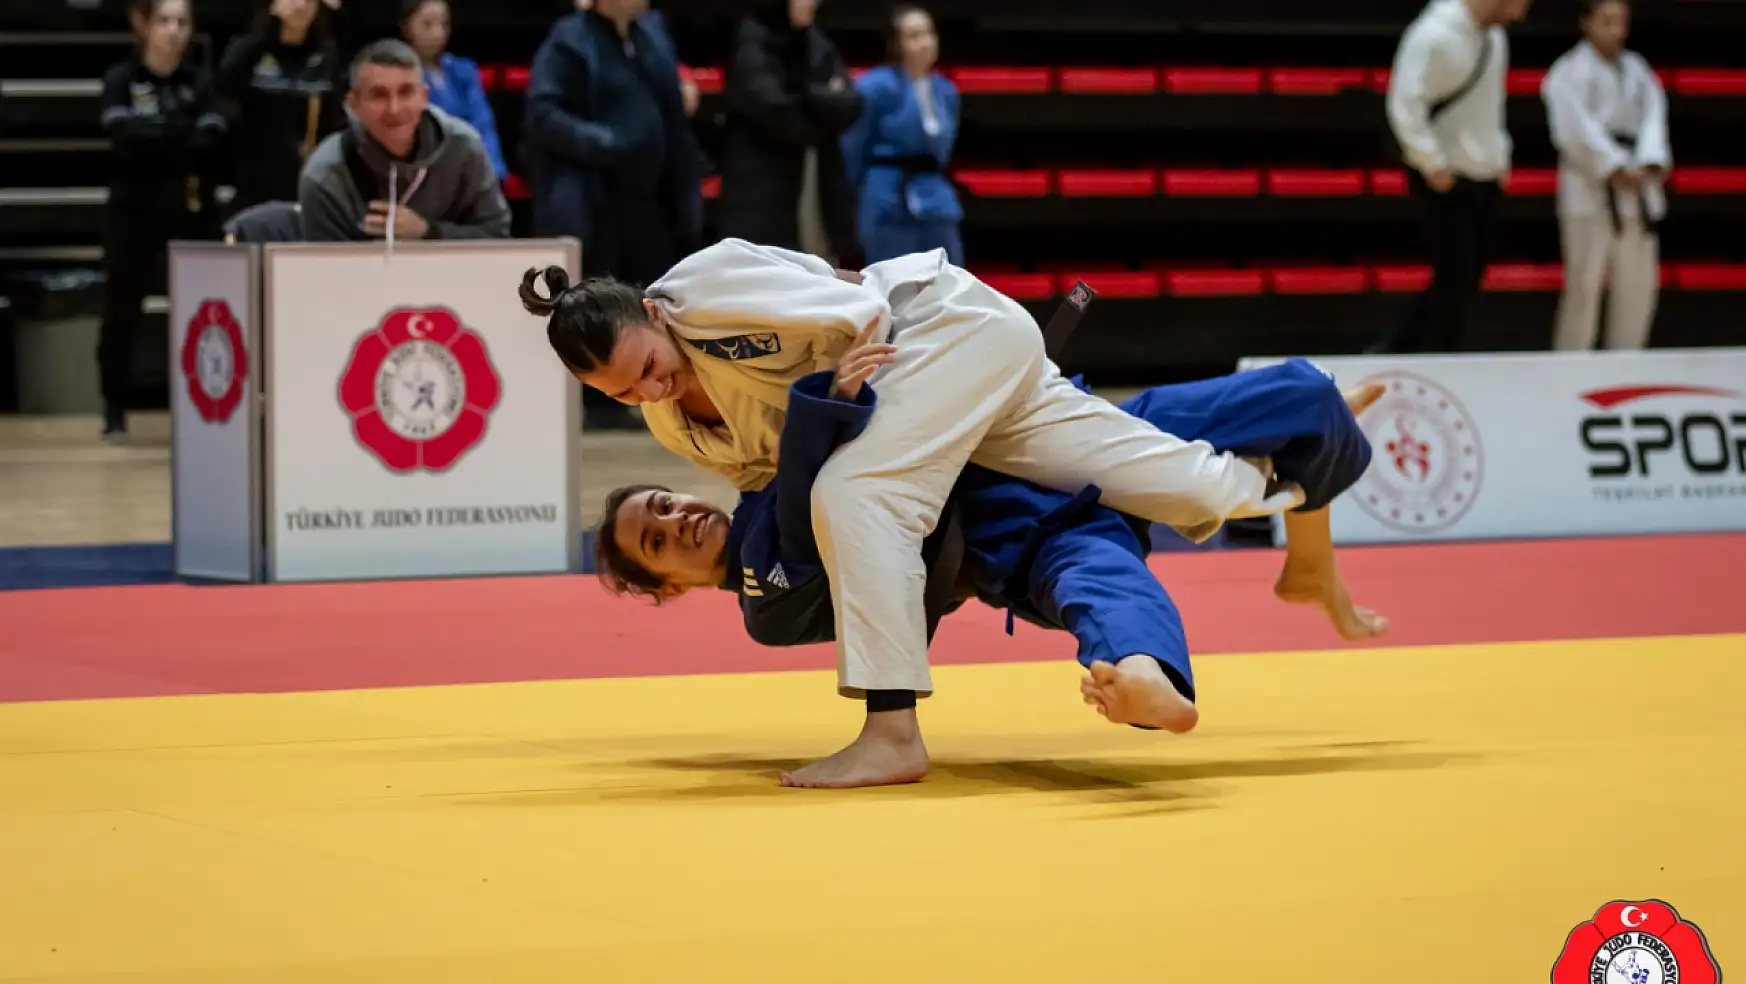 Spor Toto Ümitler Judo Şampiyonası sona erdi